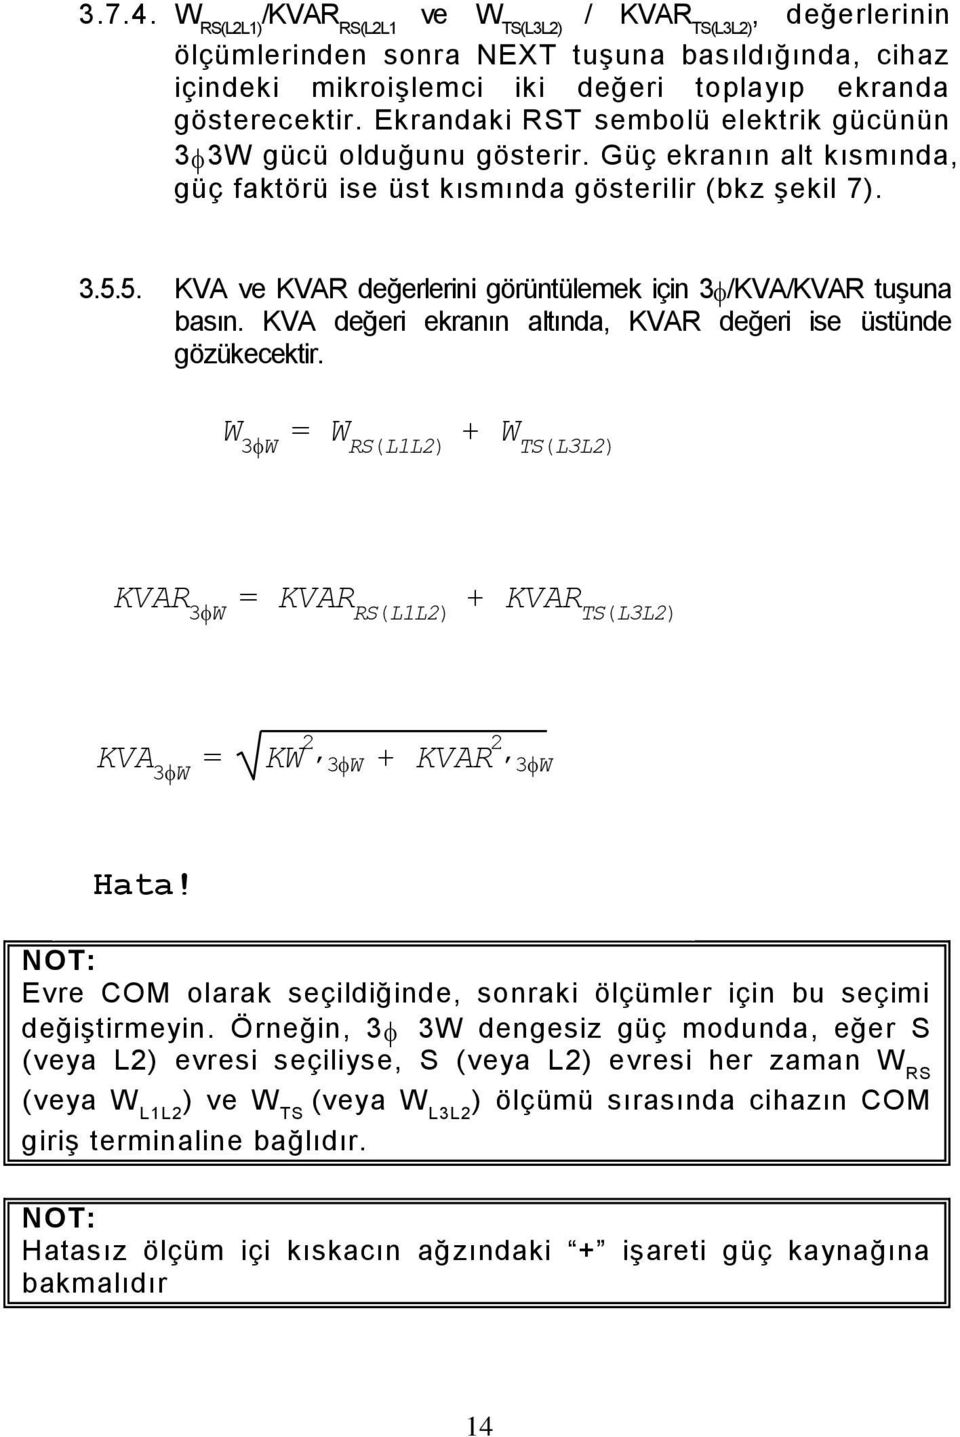 5. KVA ve KVAR değerlerini görüntülemek için 3 /KVA/KVAR tuşuna basın. KVA değeri ekranın altında, KVAR değeri ise üstünde gözükecektir.